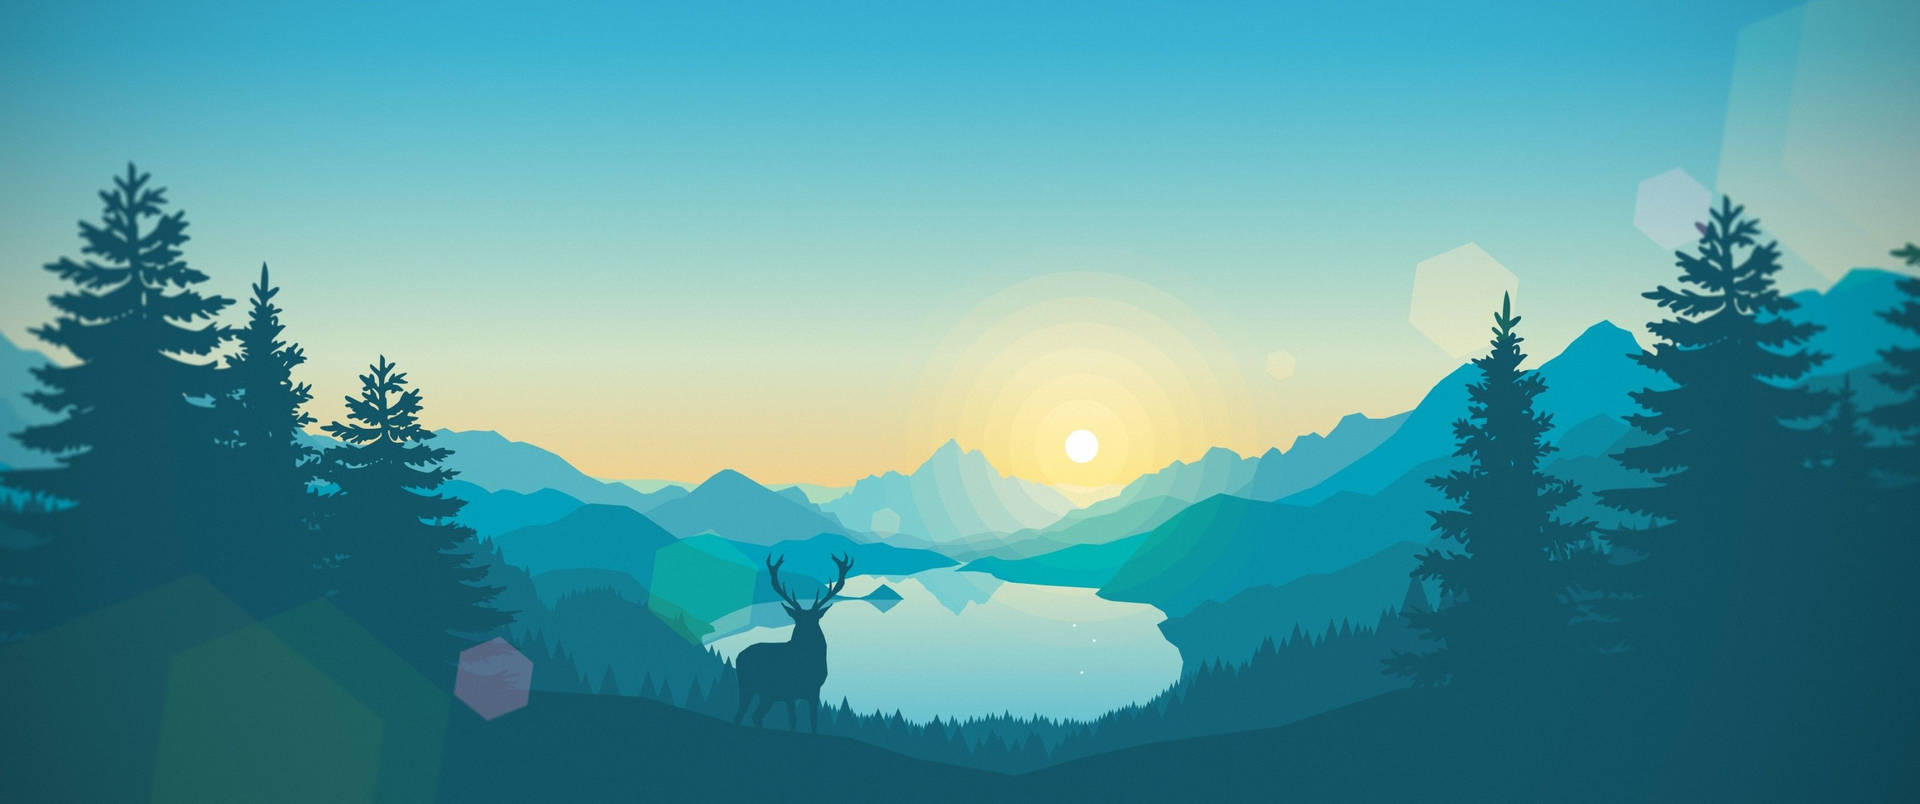 3440x1440 Minimalist Blue Morning Landscape Background